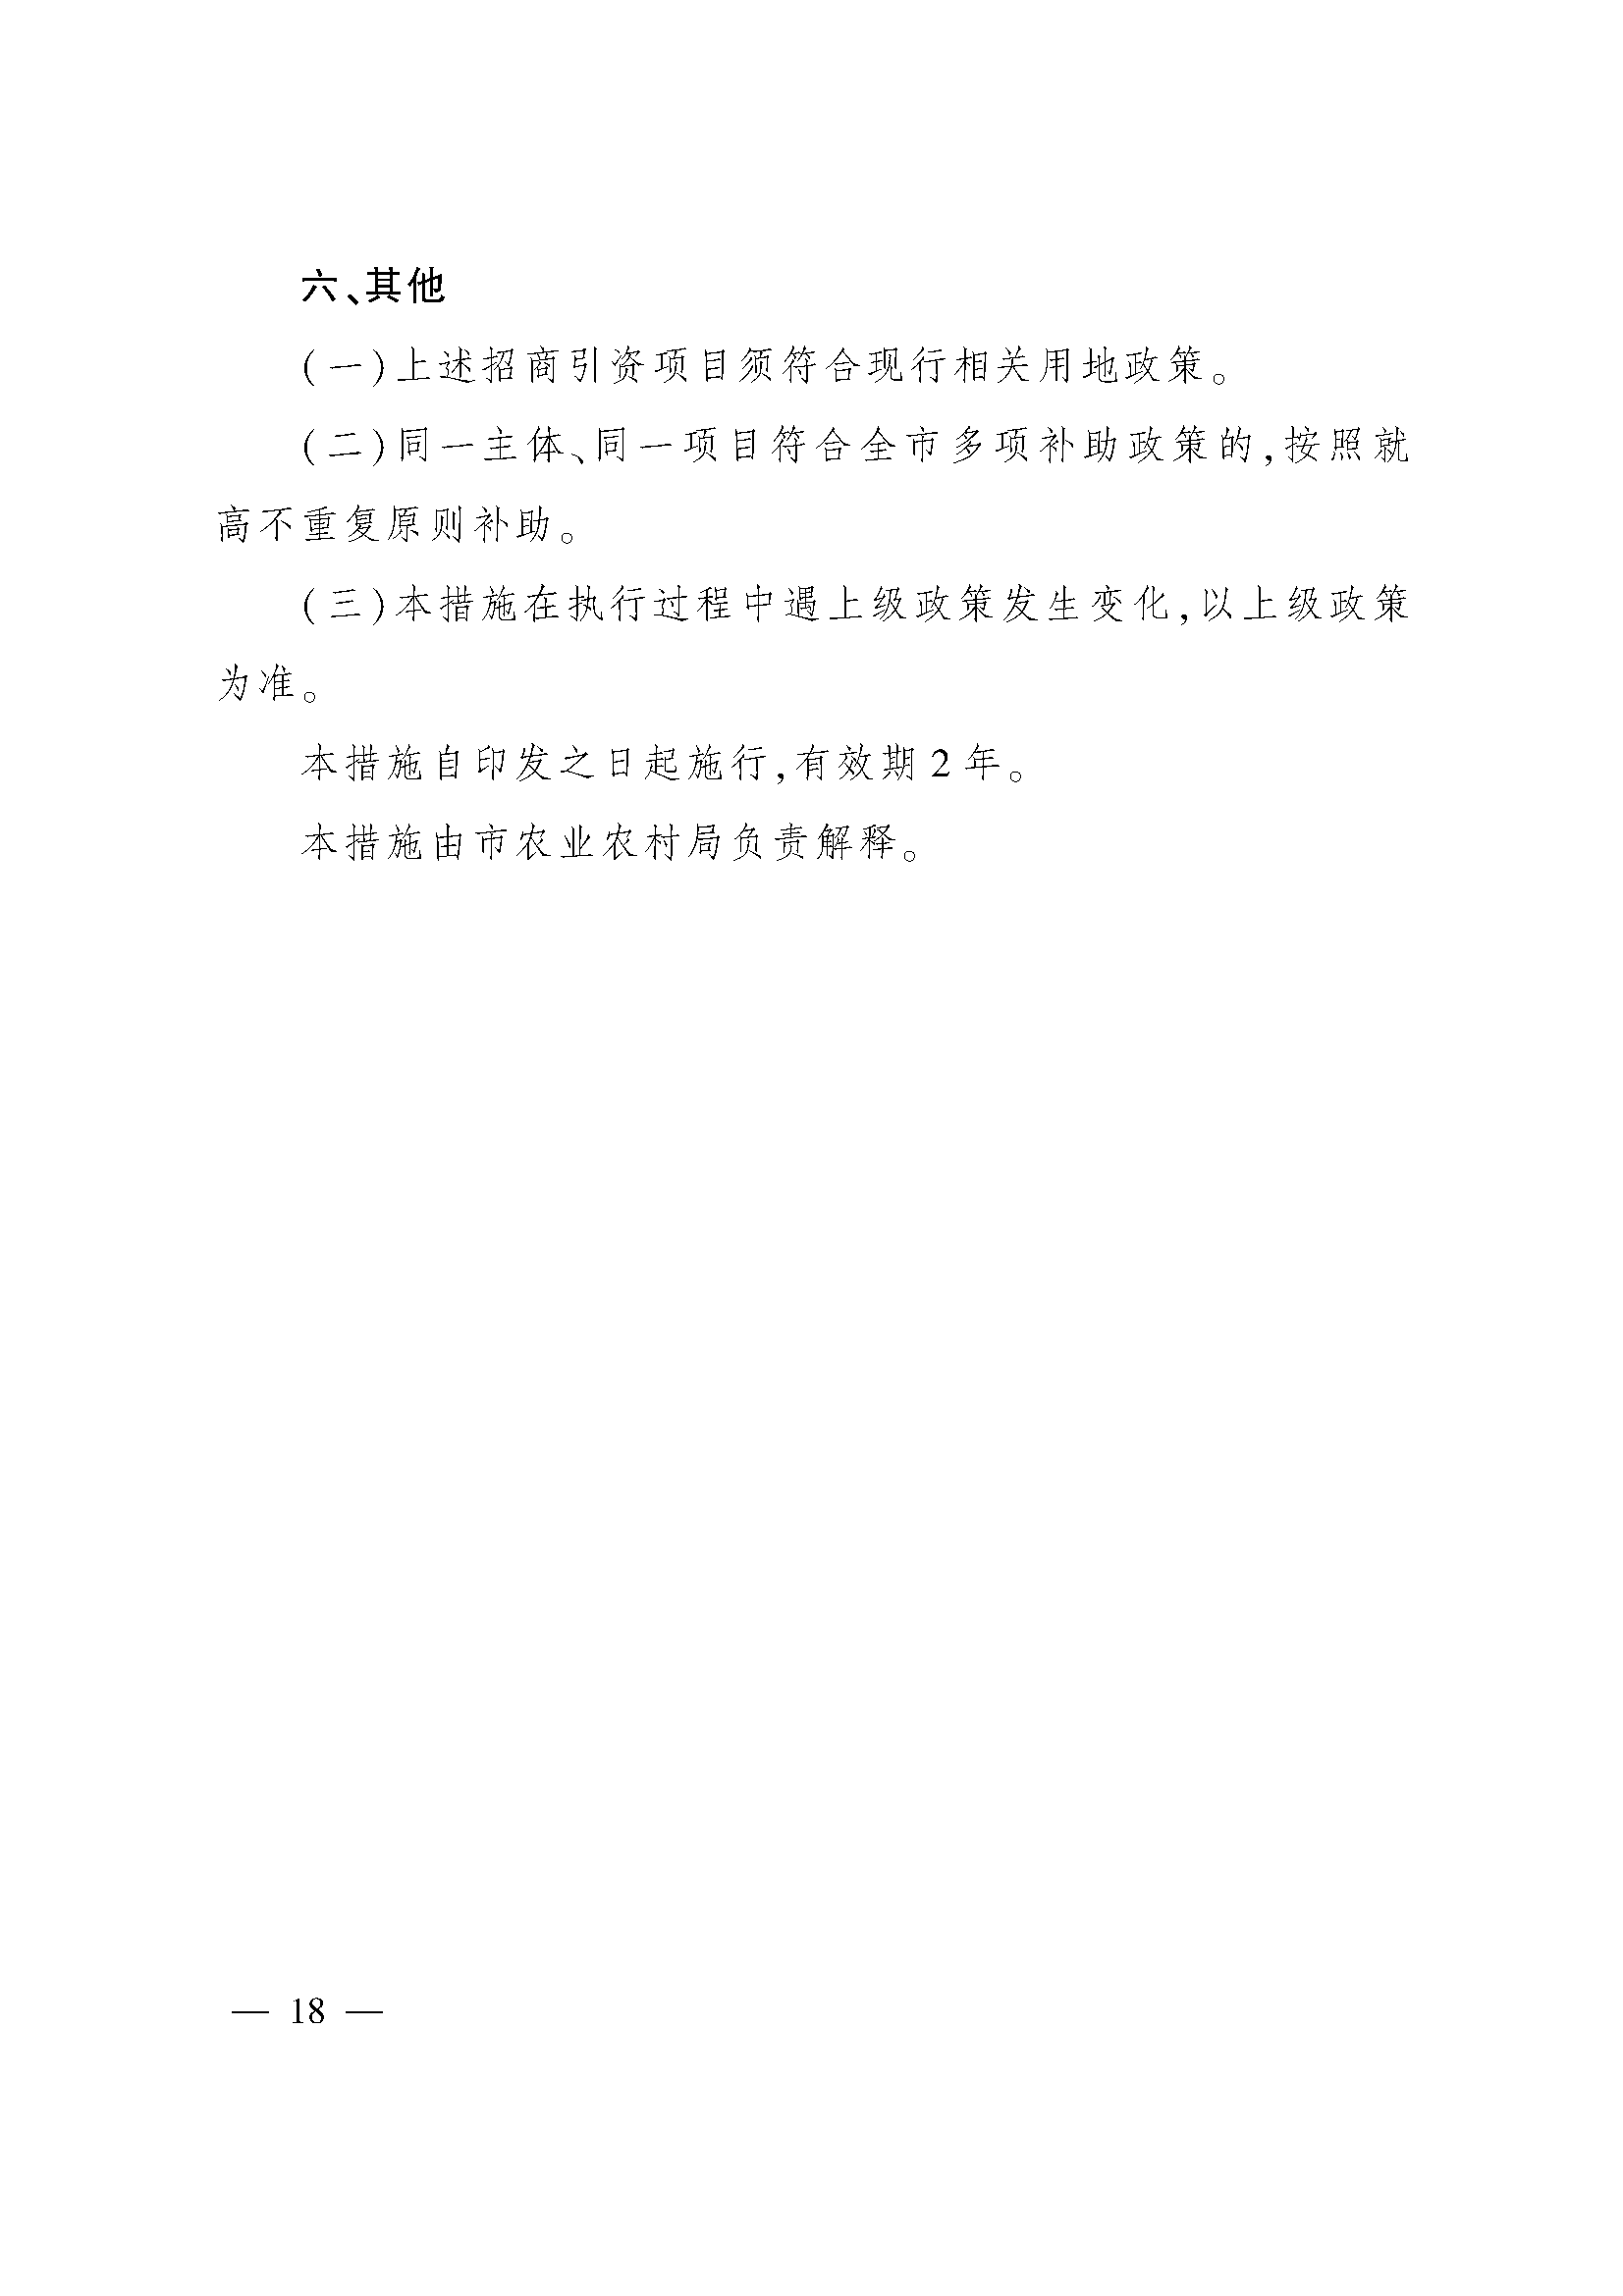 太原市人民政府办公室关于印发太原市招商引资若干措施的通知(图18)